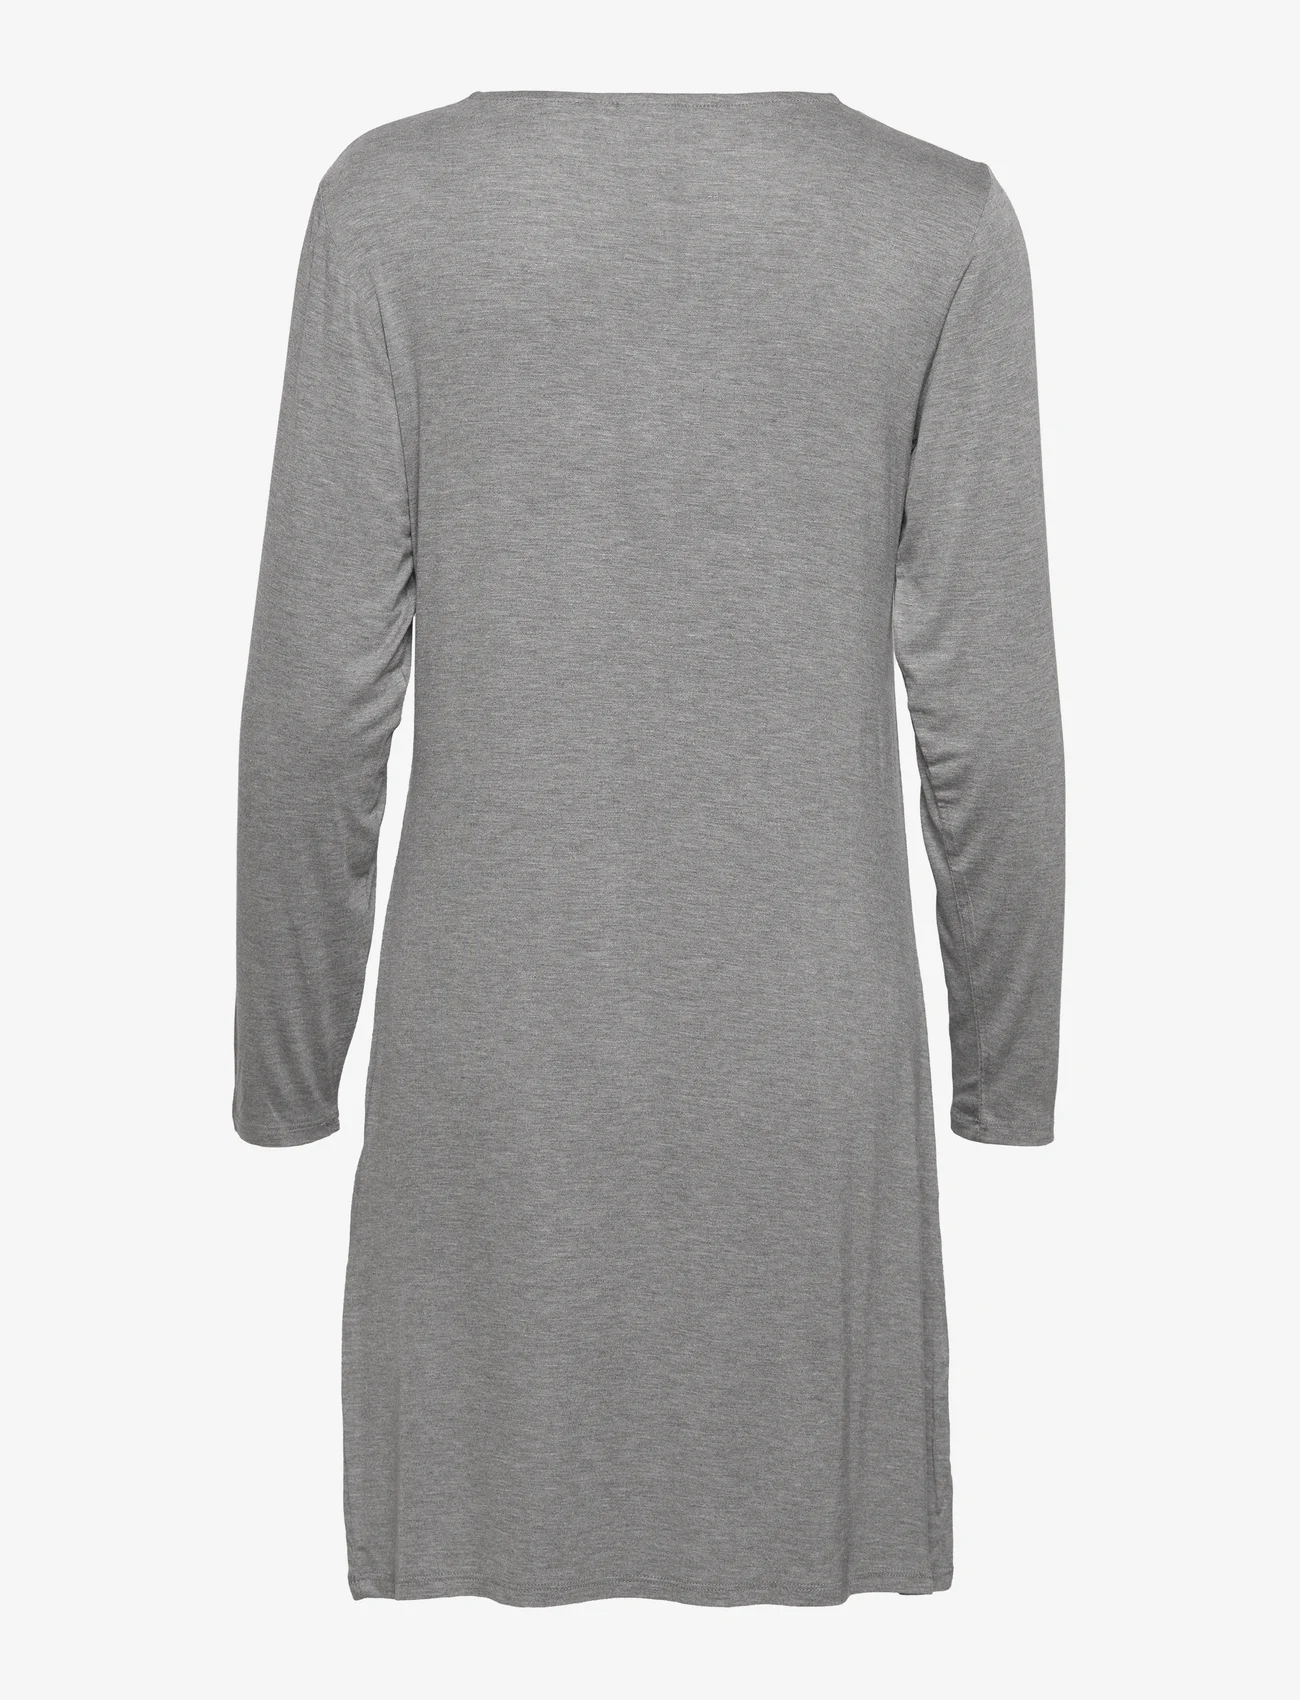 CCDK Copenhagen - Jacqueline long-sleeved Dress - verjaardagscadeaus - grey melange - 1